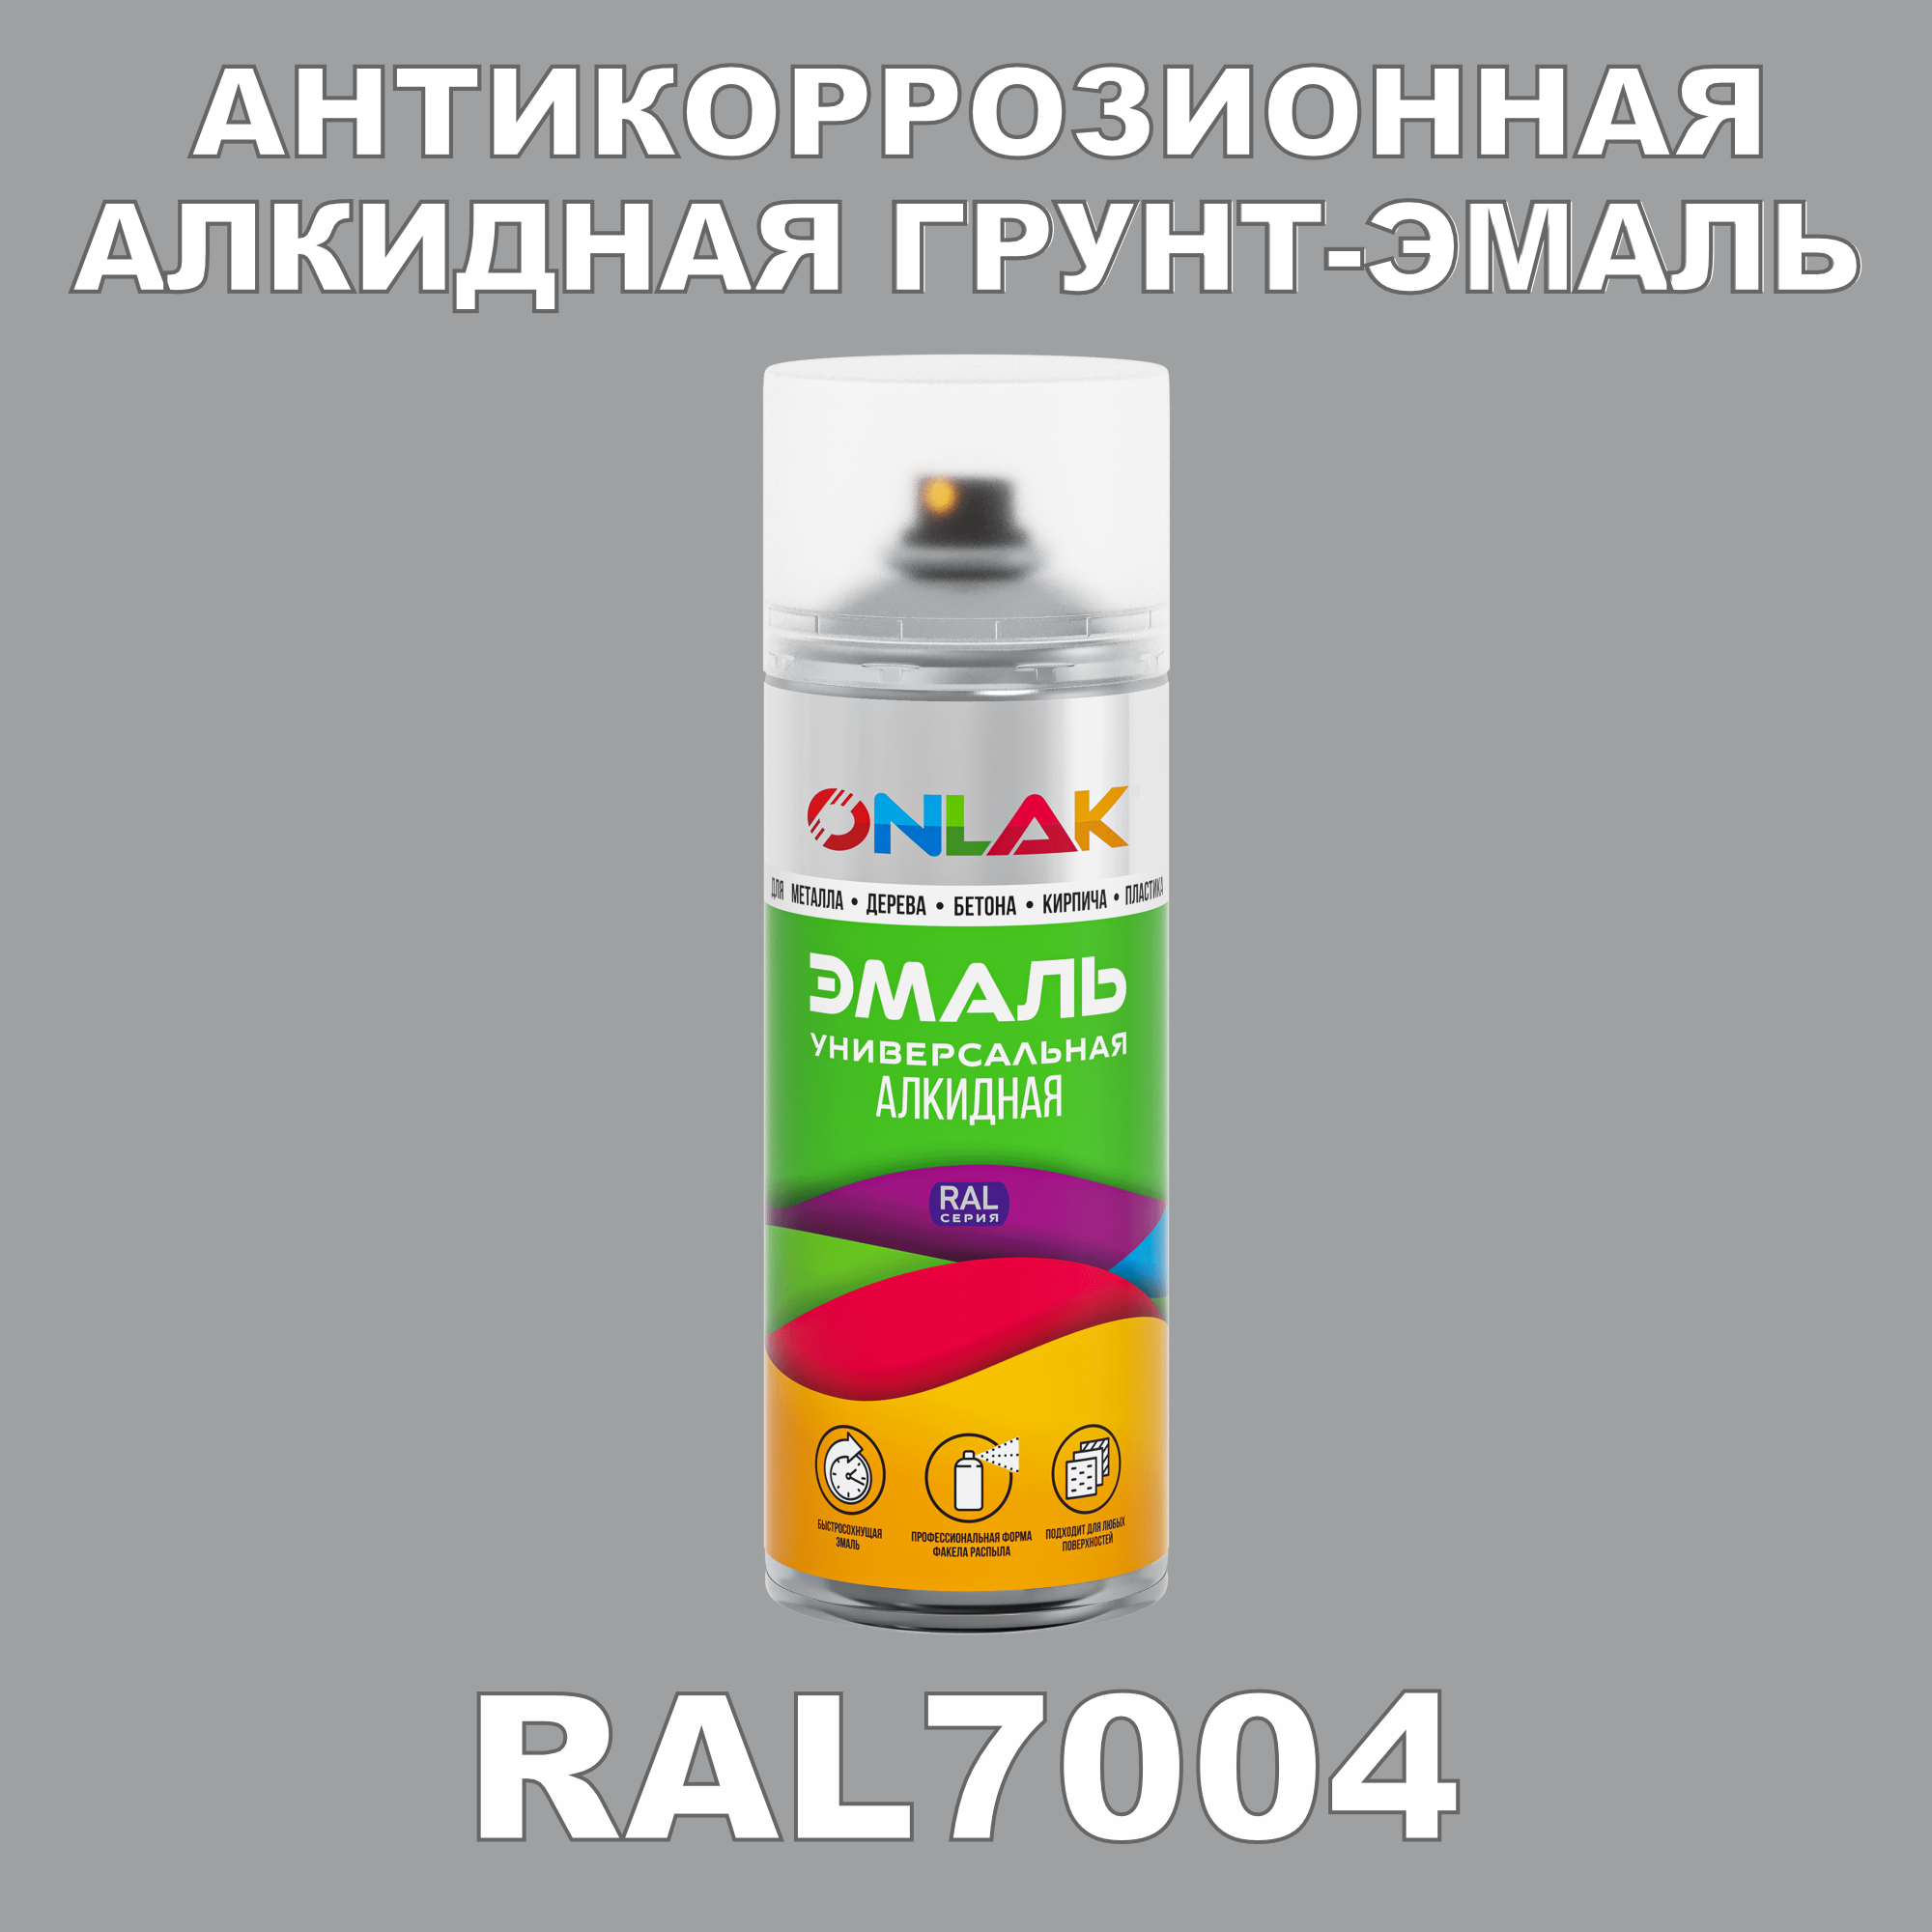 Антикоррозионная грунт-эмаль ONLAK RAL7004 полуматовая для металла и защиты от ржавчины